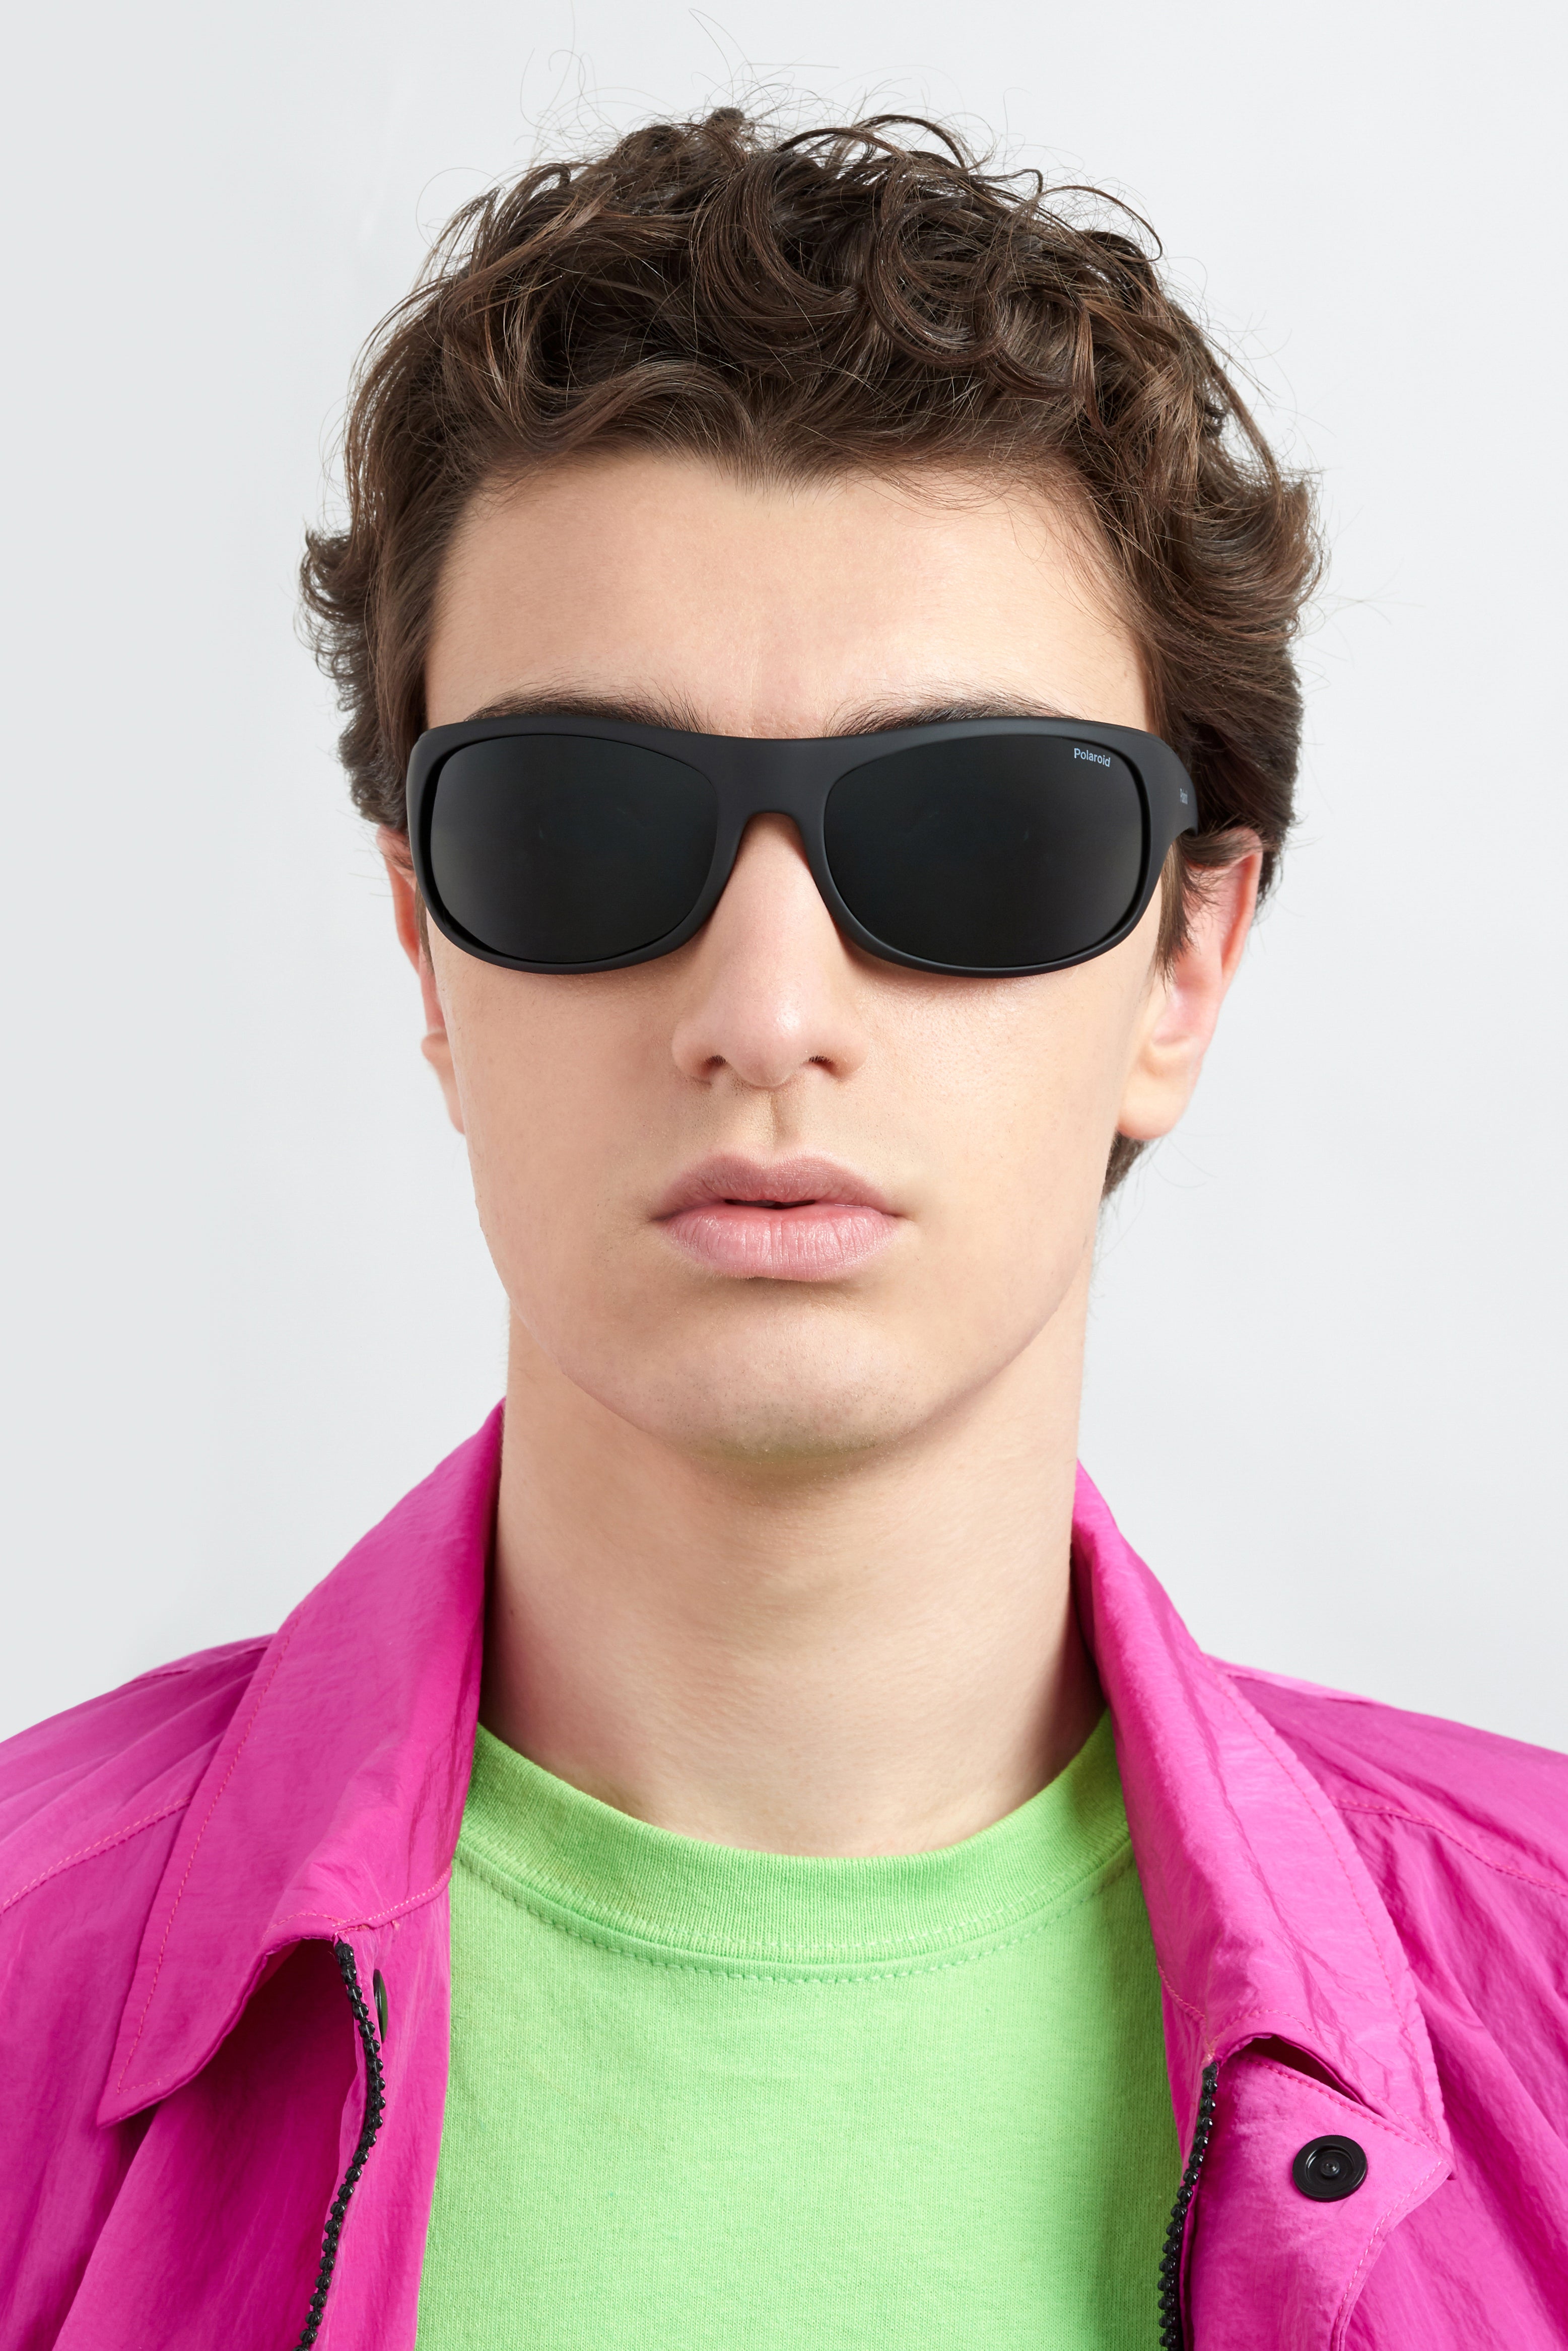 Polaroid Wraparound Sports Sunglasses